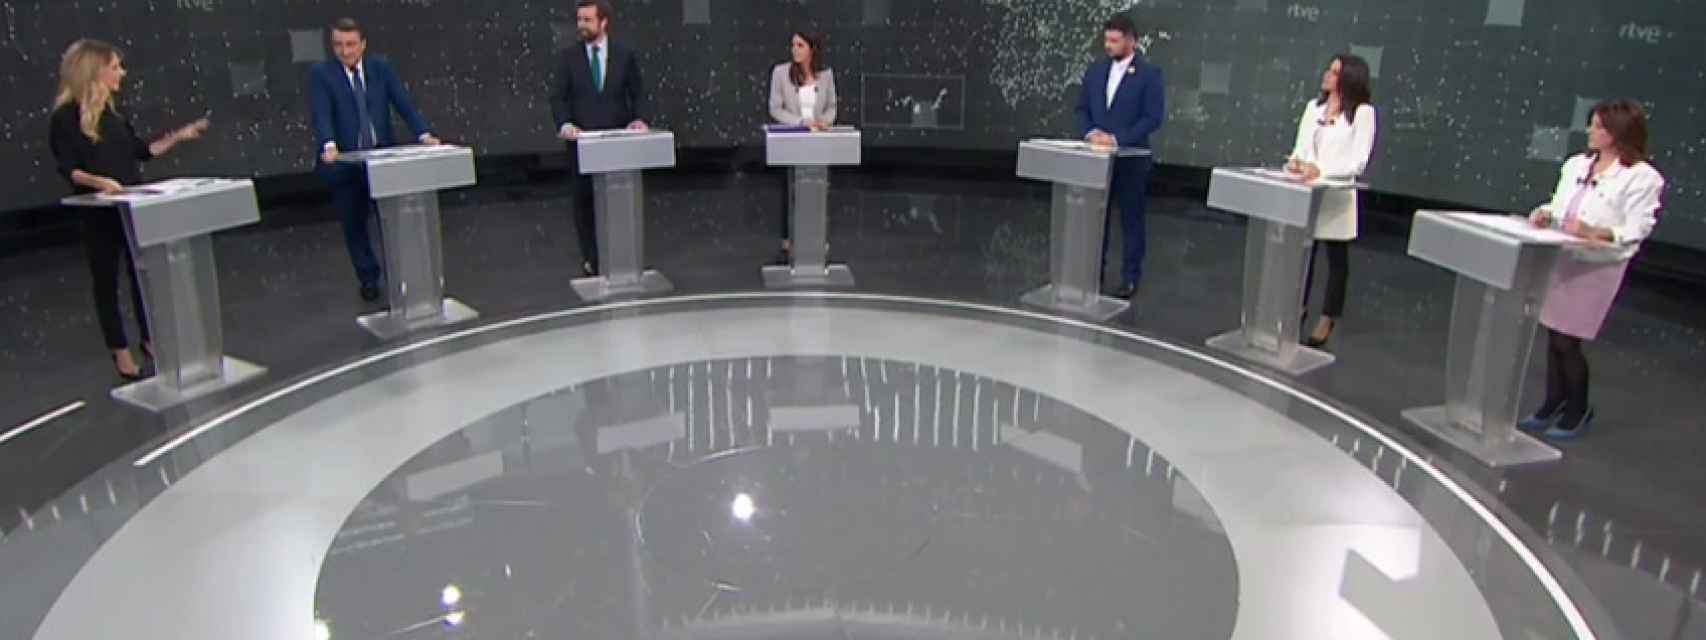 Los representantes de los partidos que participan en el debate.